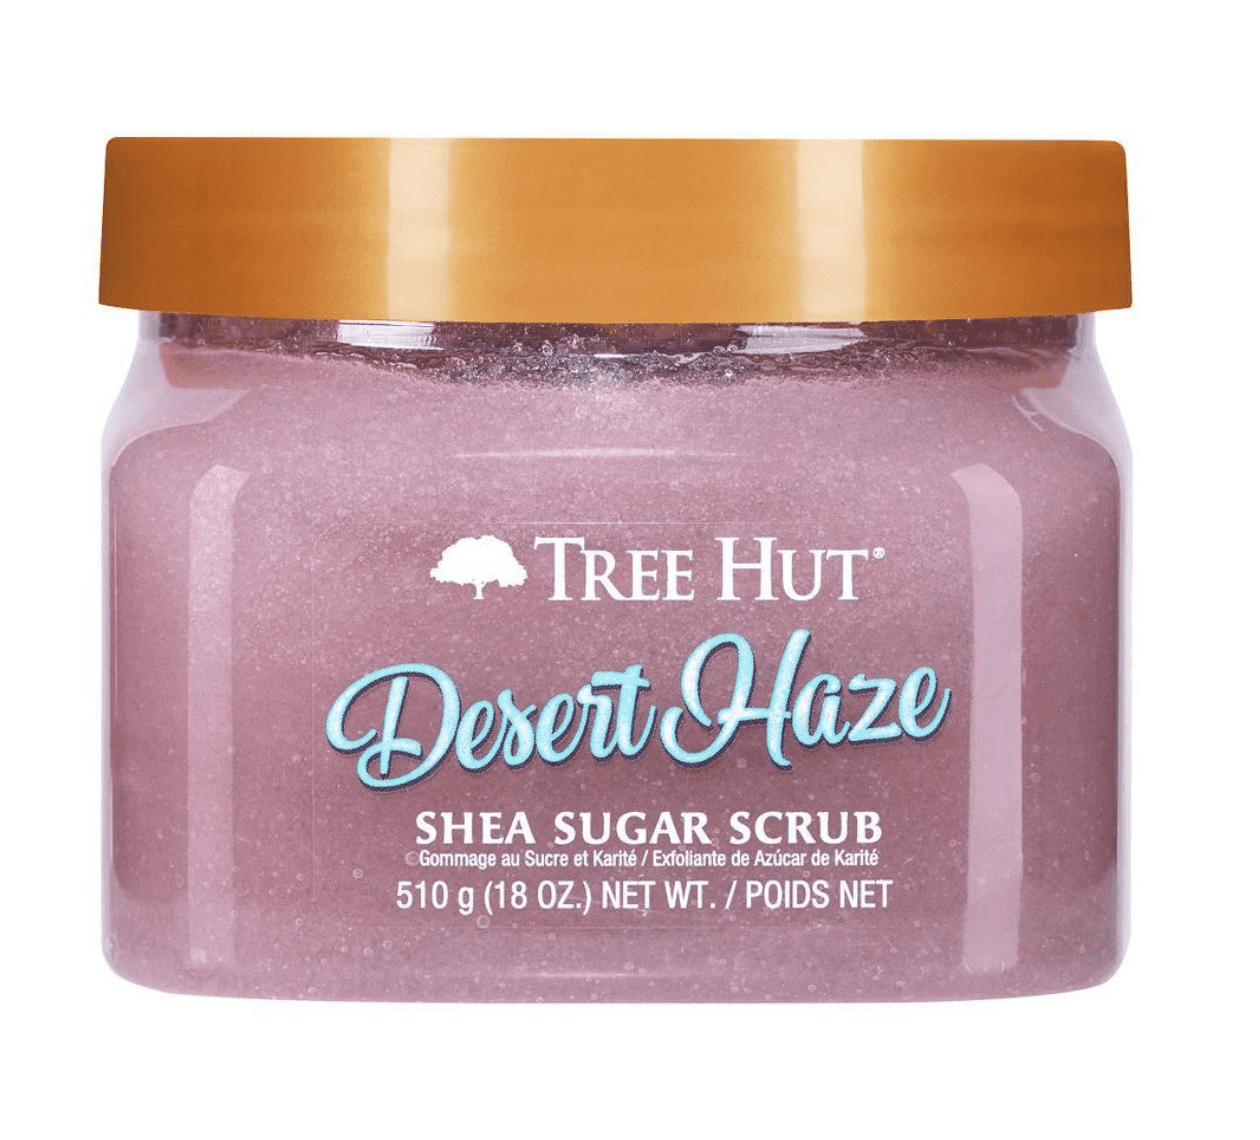 Tree hut - Body scrub "desert haze" - 510g - Tree Hut - Ethni Beauty Market